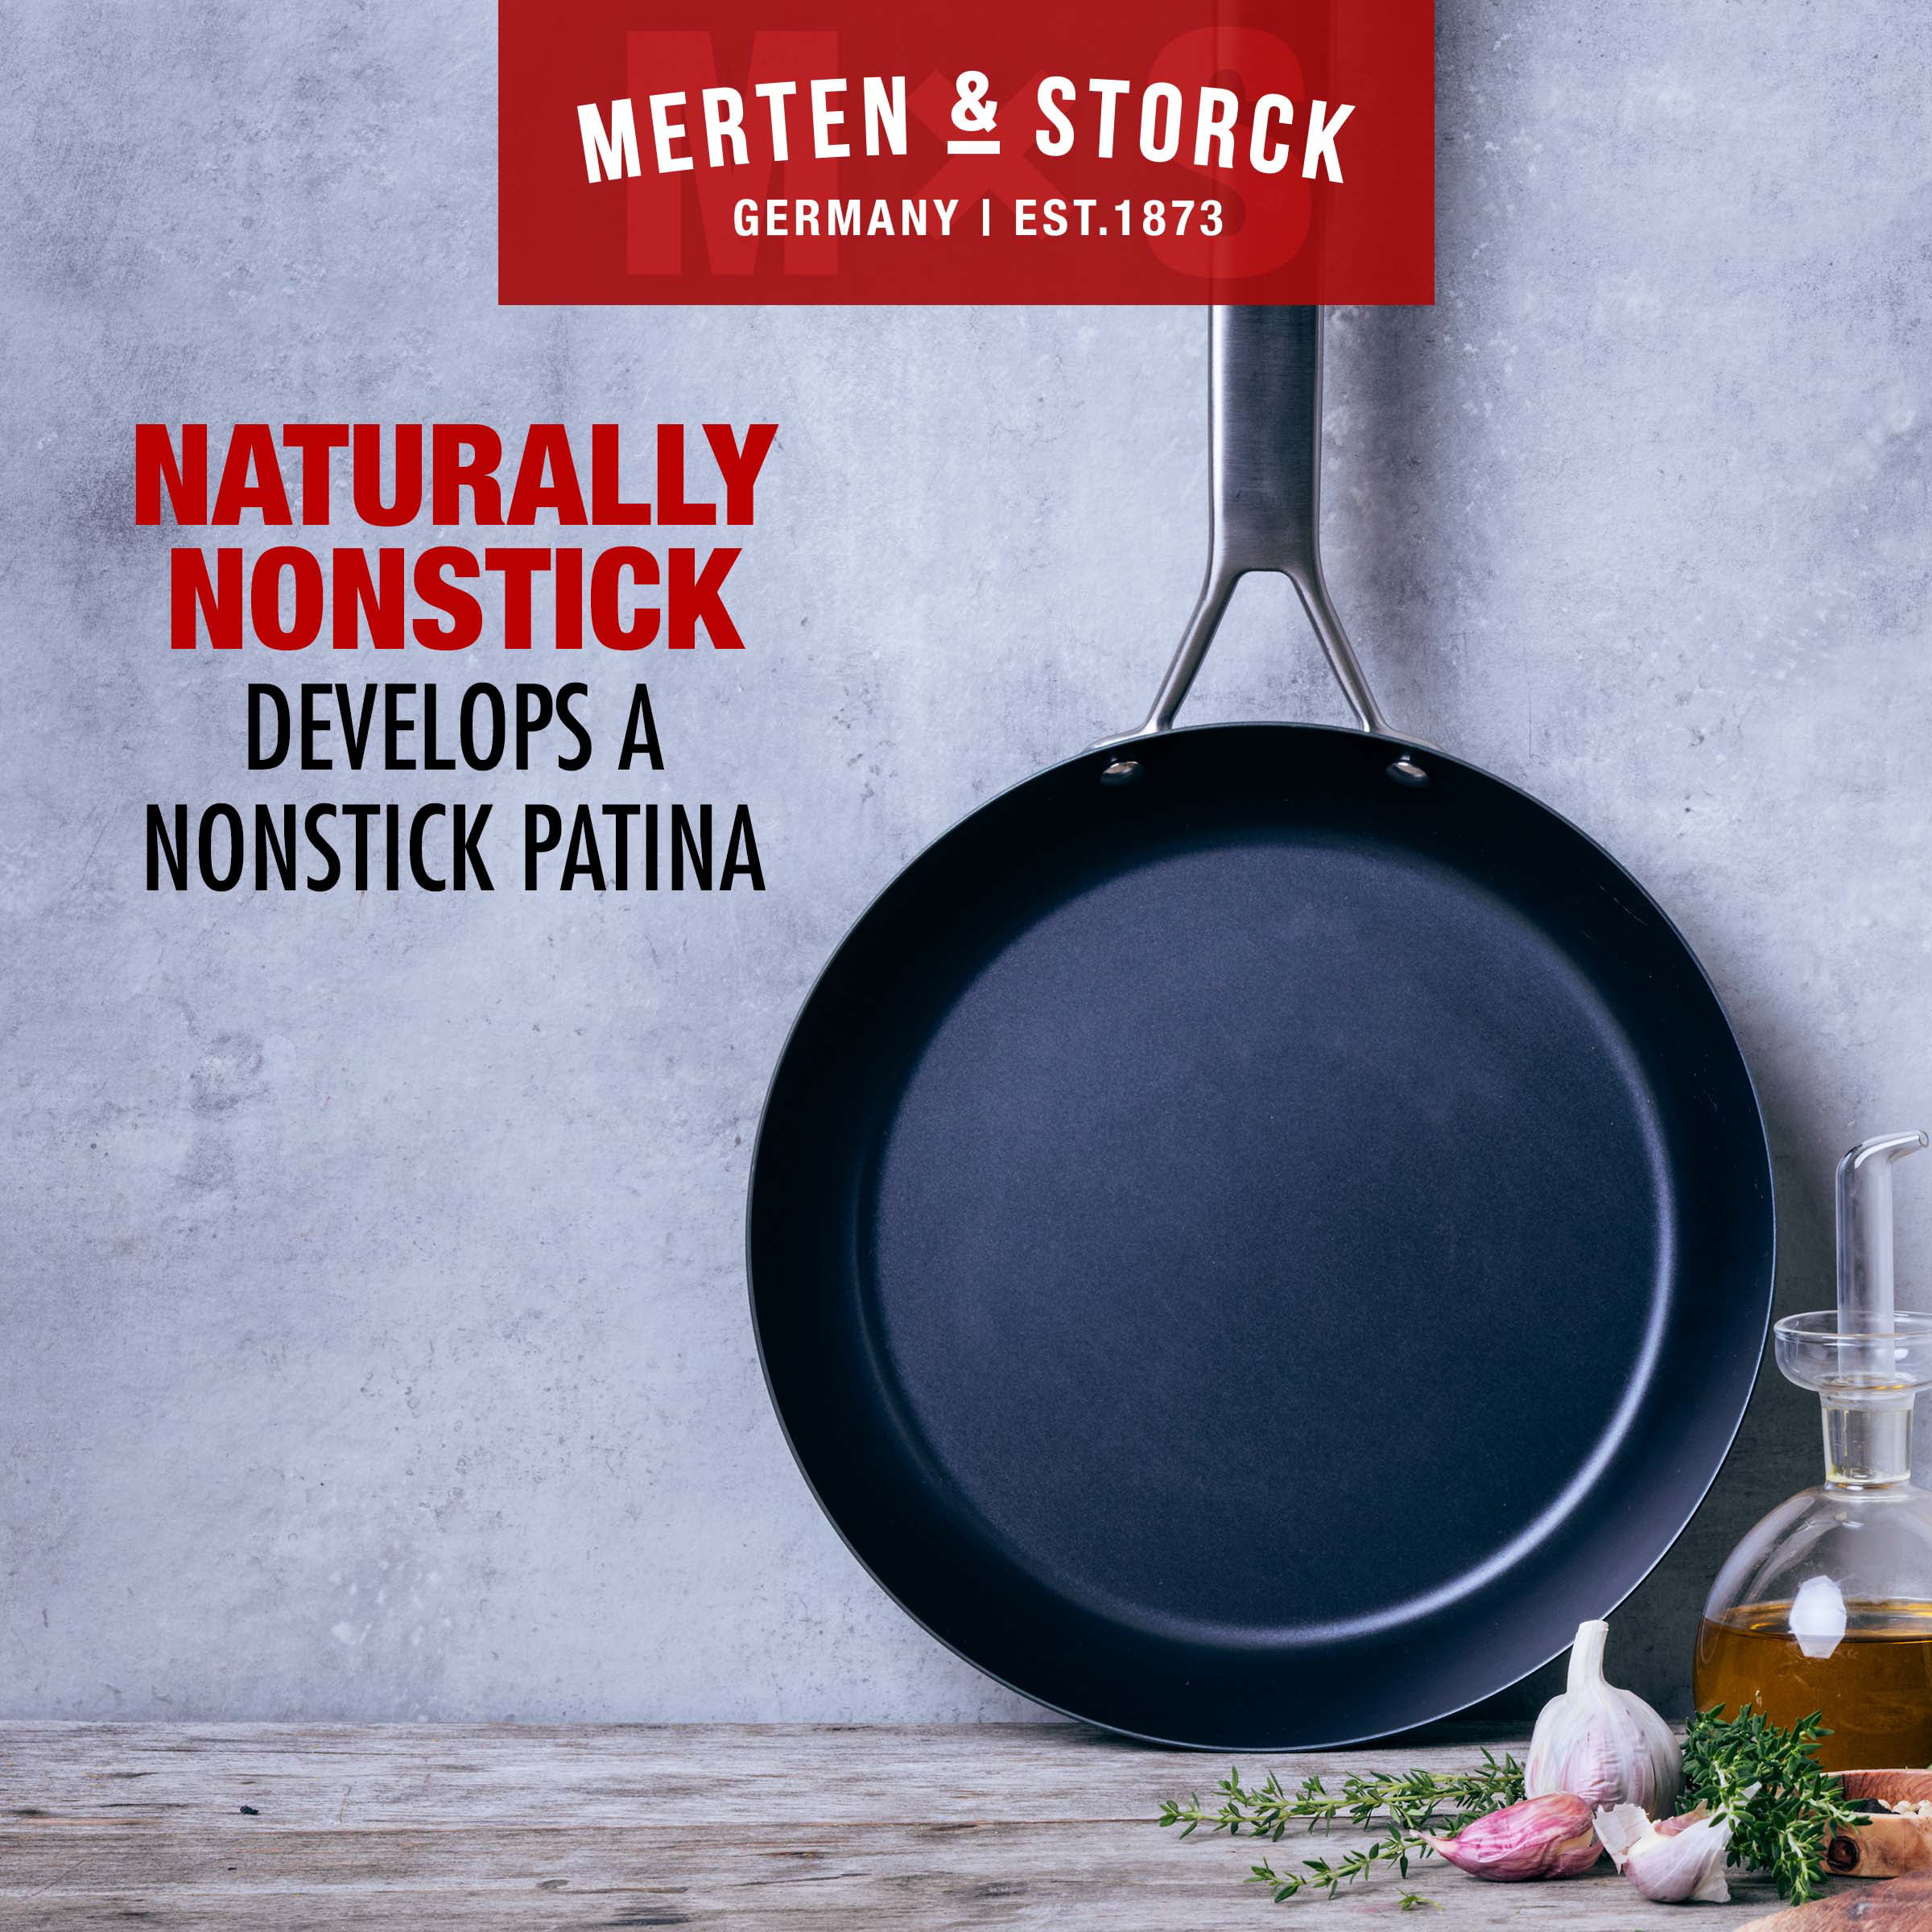 Merten & Storck Pre-Seasoned Carbon Steel Black Frying Pan, 10-Inch